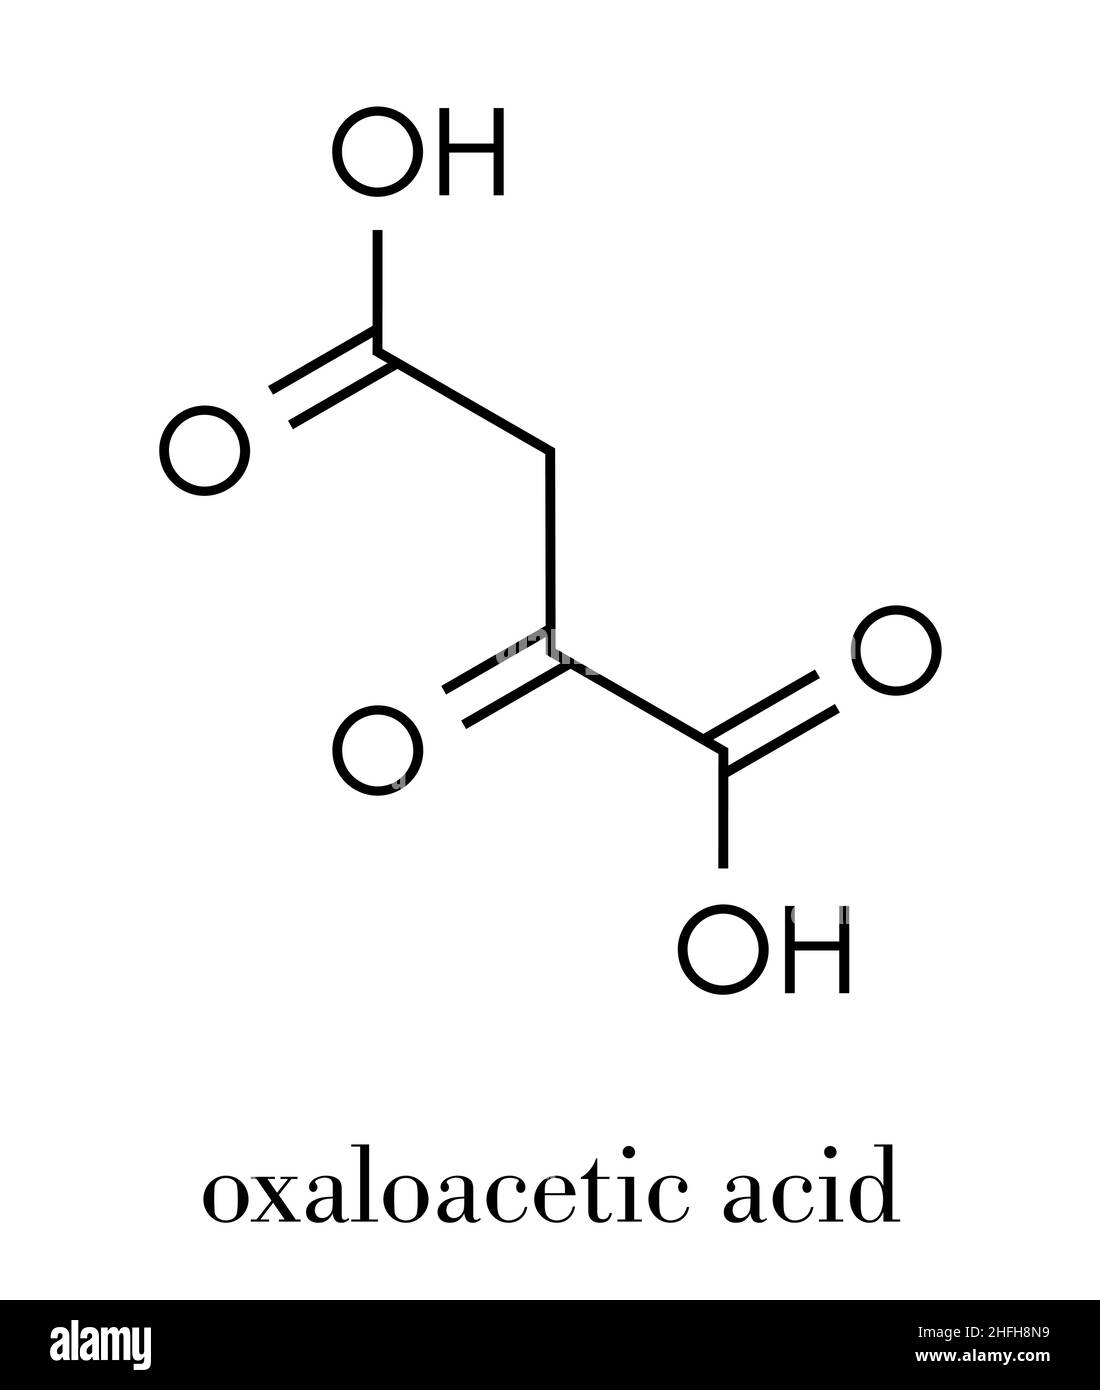 Oxaloacetic acid (oxaloacetate) metabolic intermediate molecule. Skeletal formula. Stock Vector